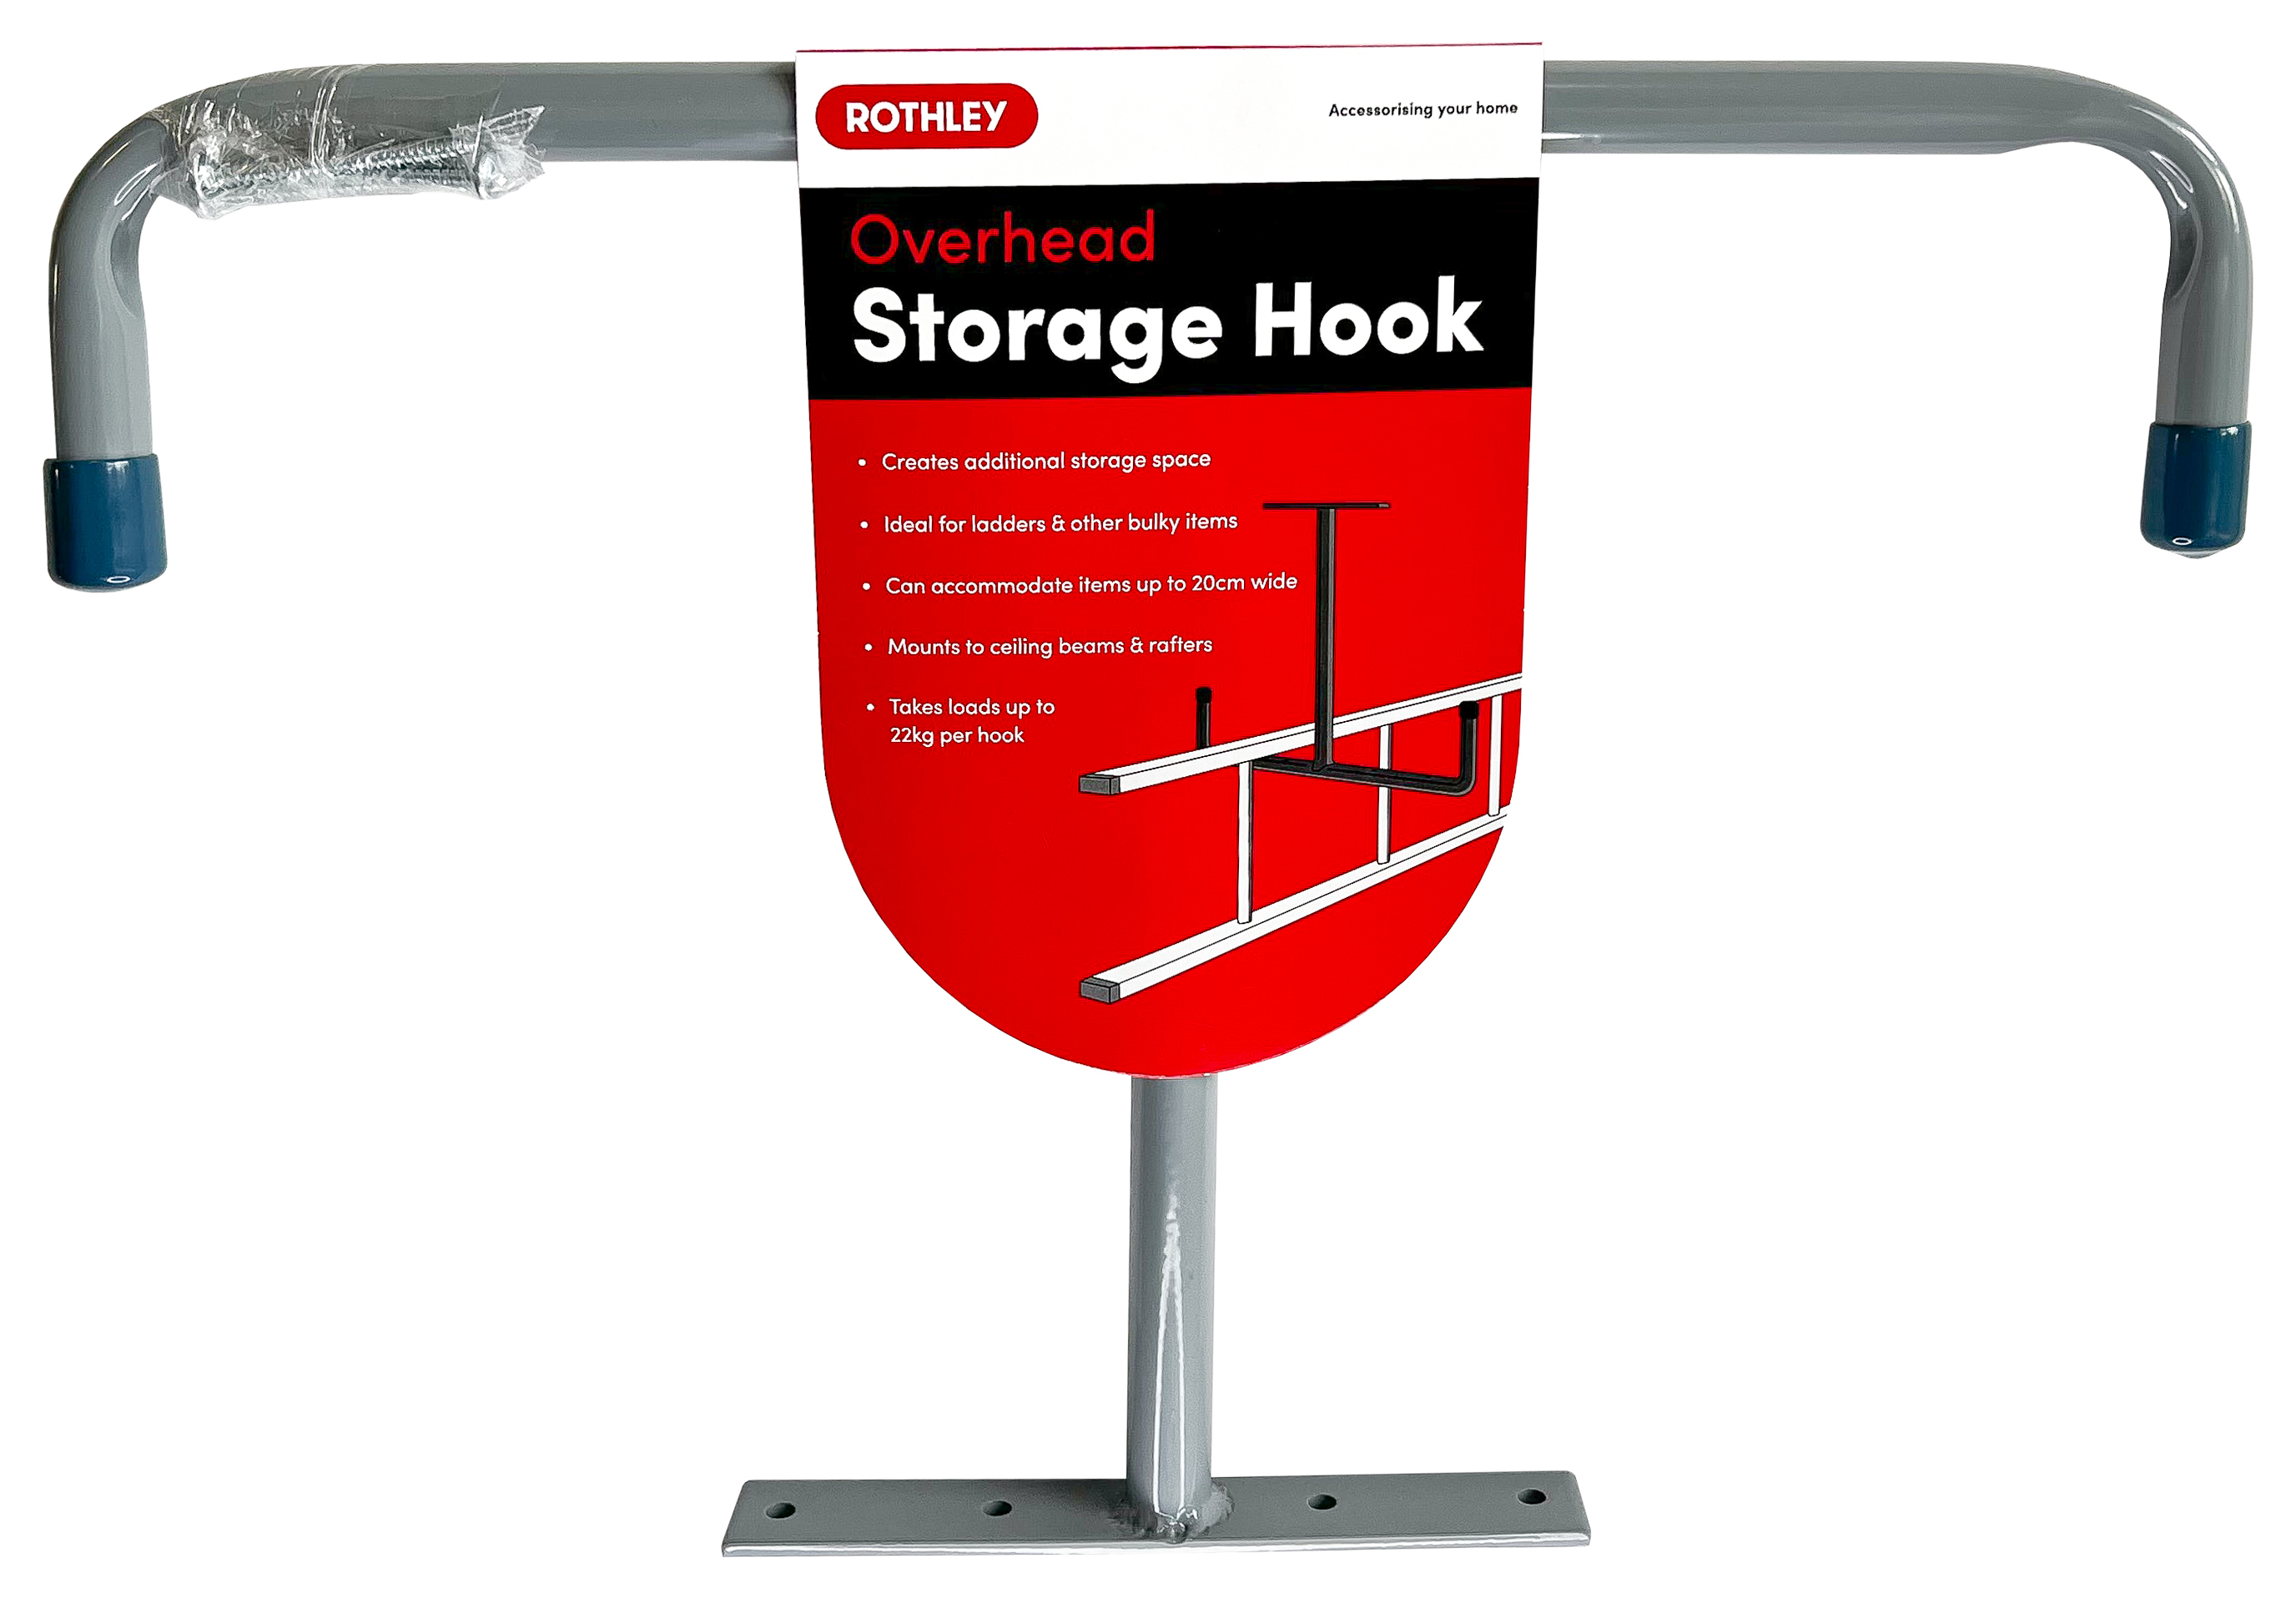 Image of Rothley Overhead Storage Hook